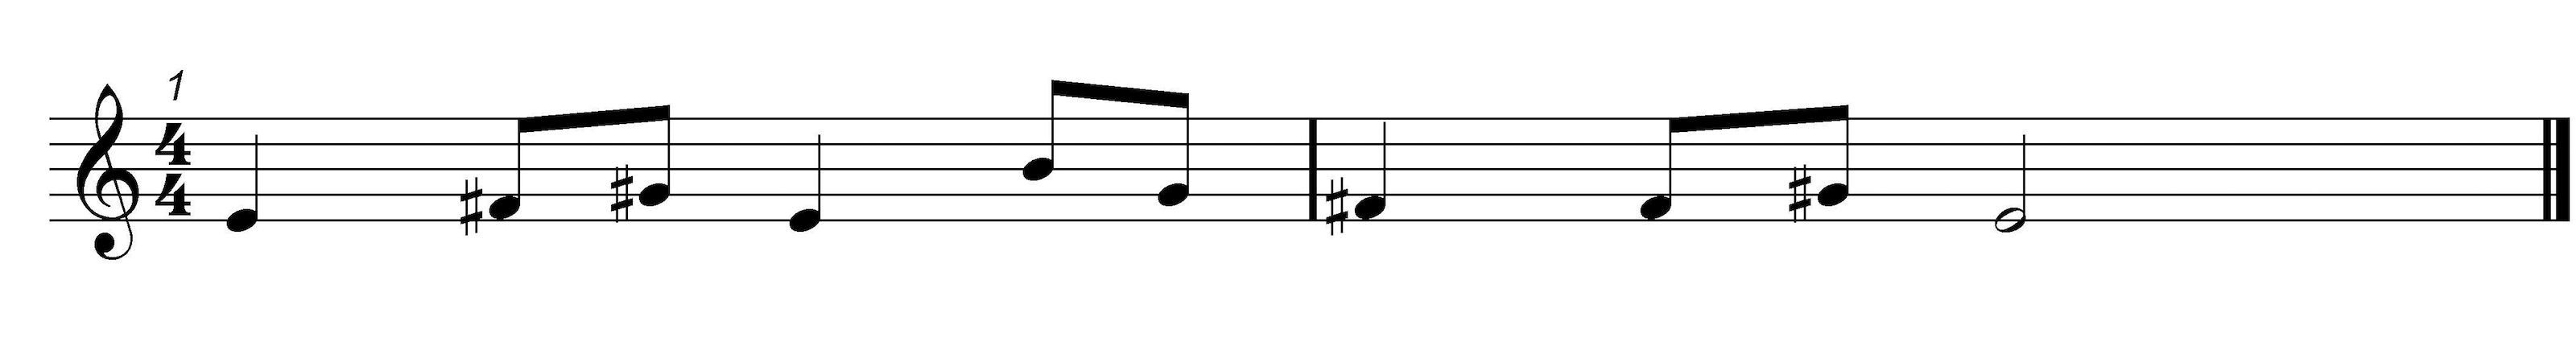 Pentatonic Solfa Melody 5 - Score